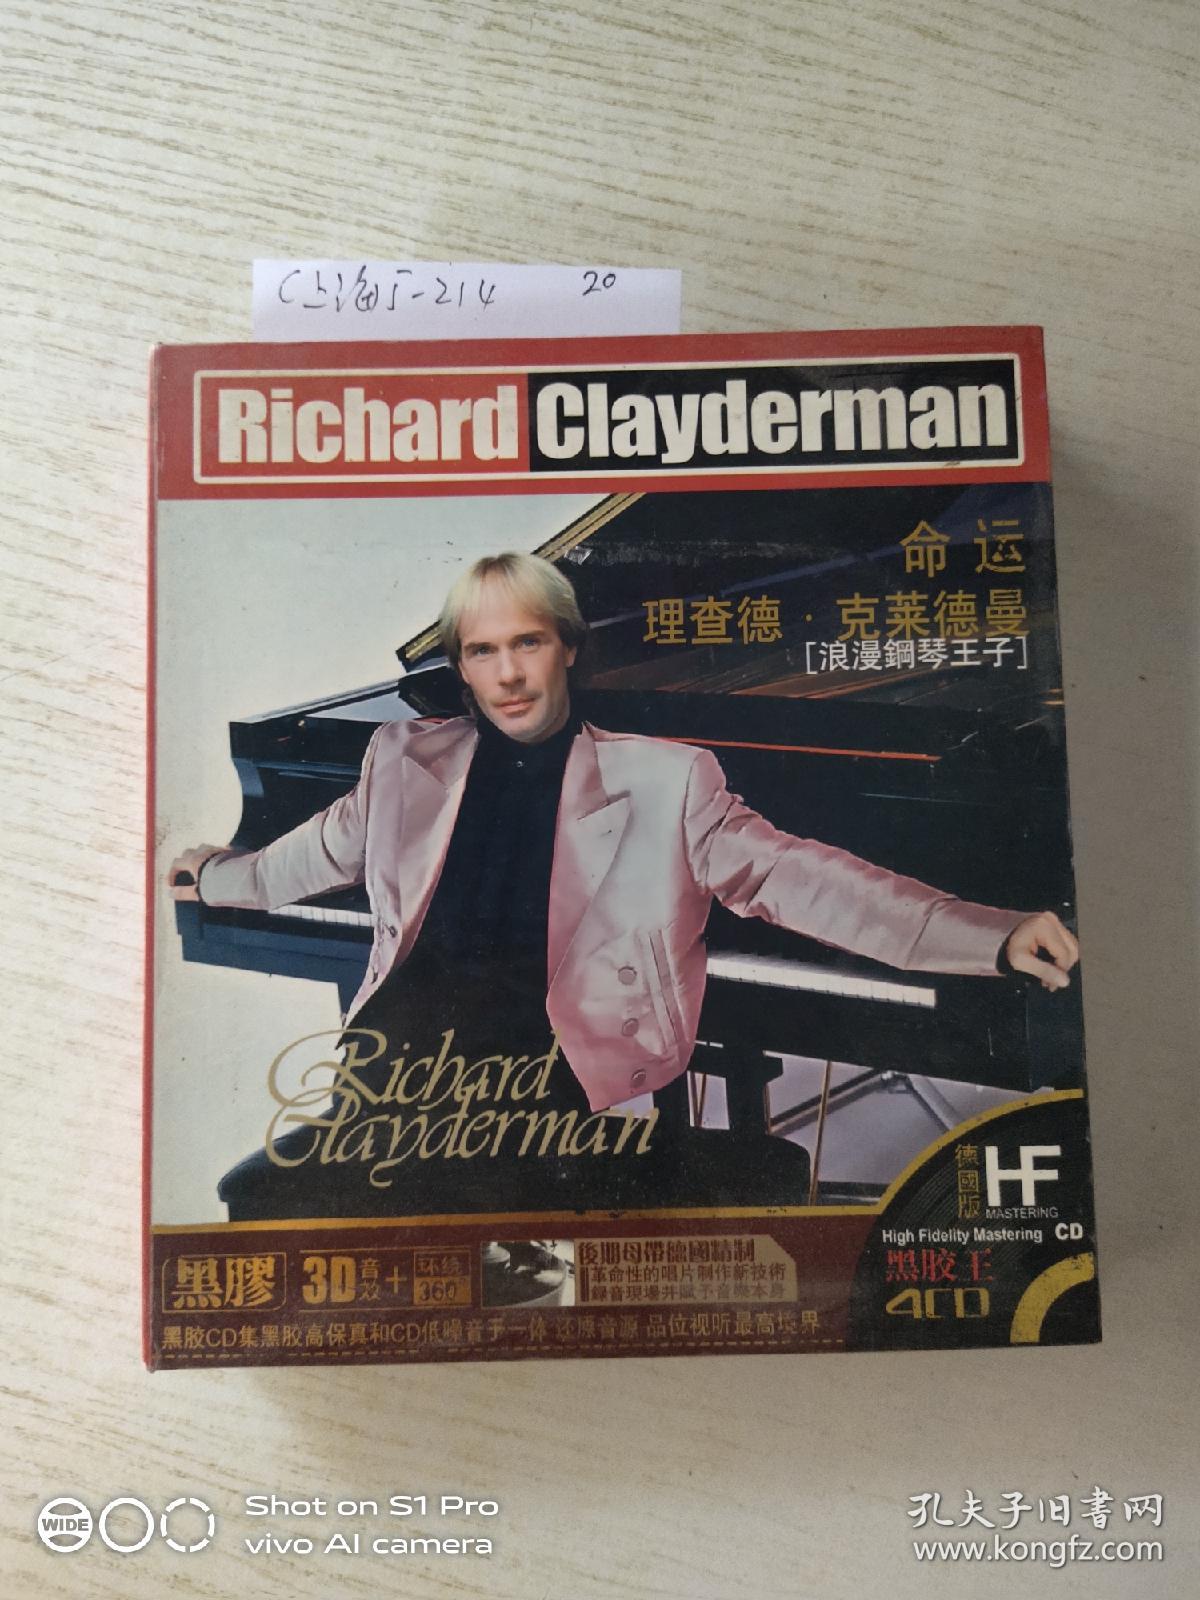 命运
理查德·克莱德曼[浪漫钢琴王子]
德国版
黑胶4CD